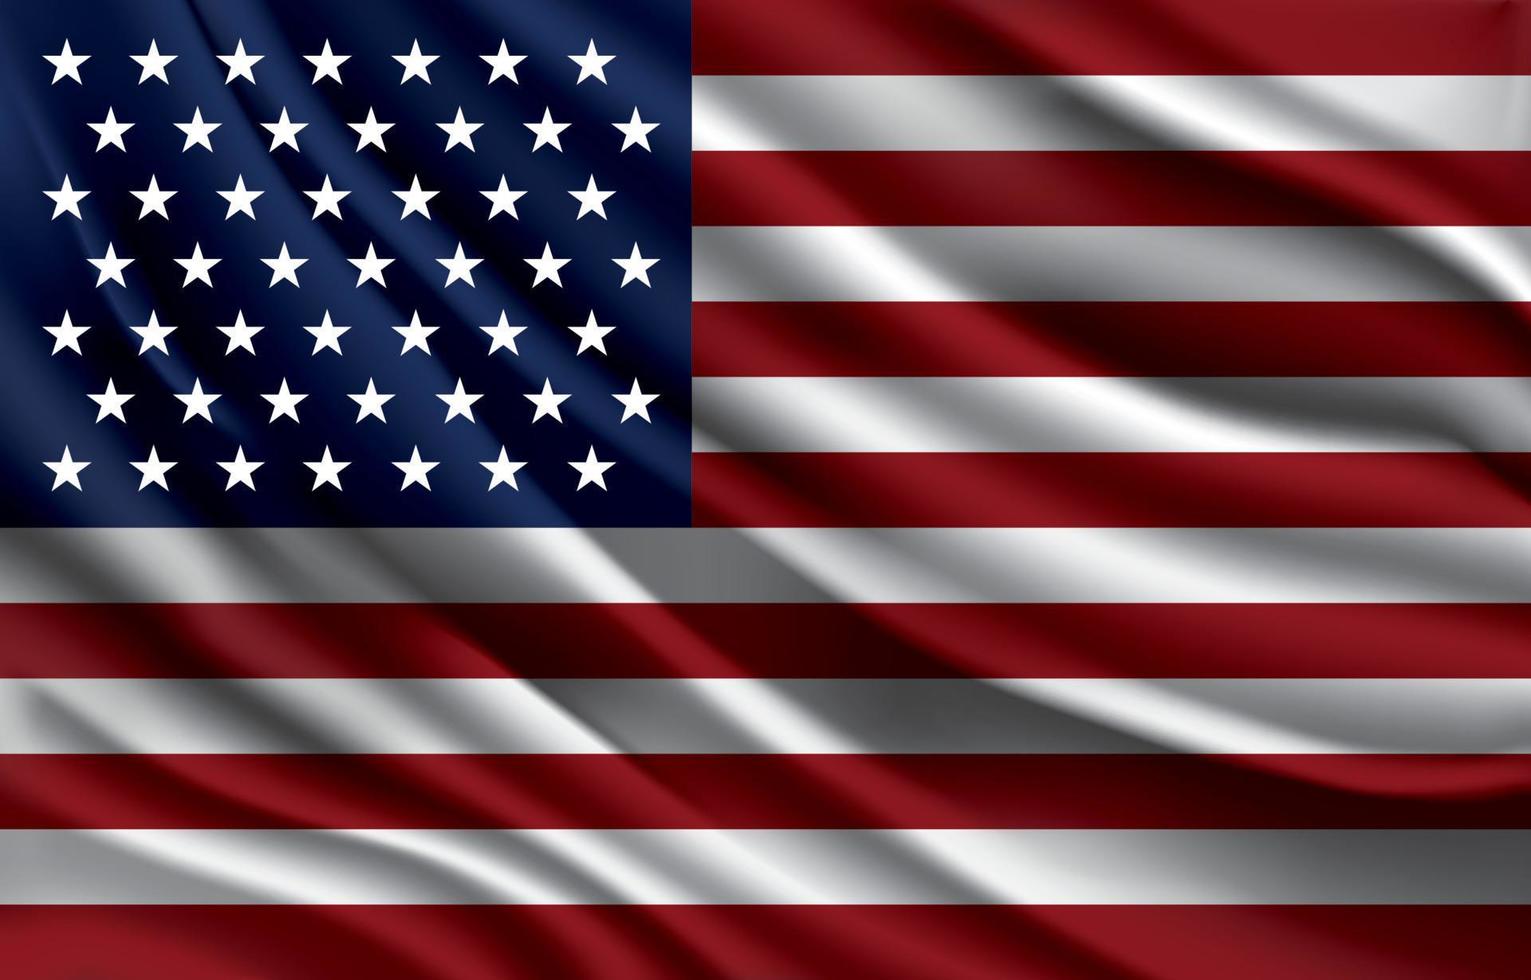 bandeira nacional do estado unido da américa acenando ilustração vetorial realista vetor